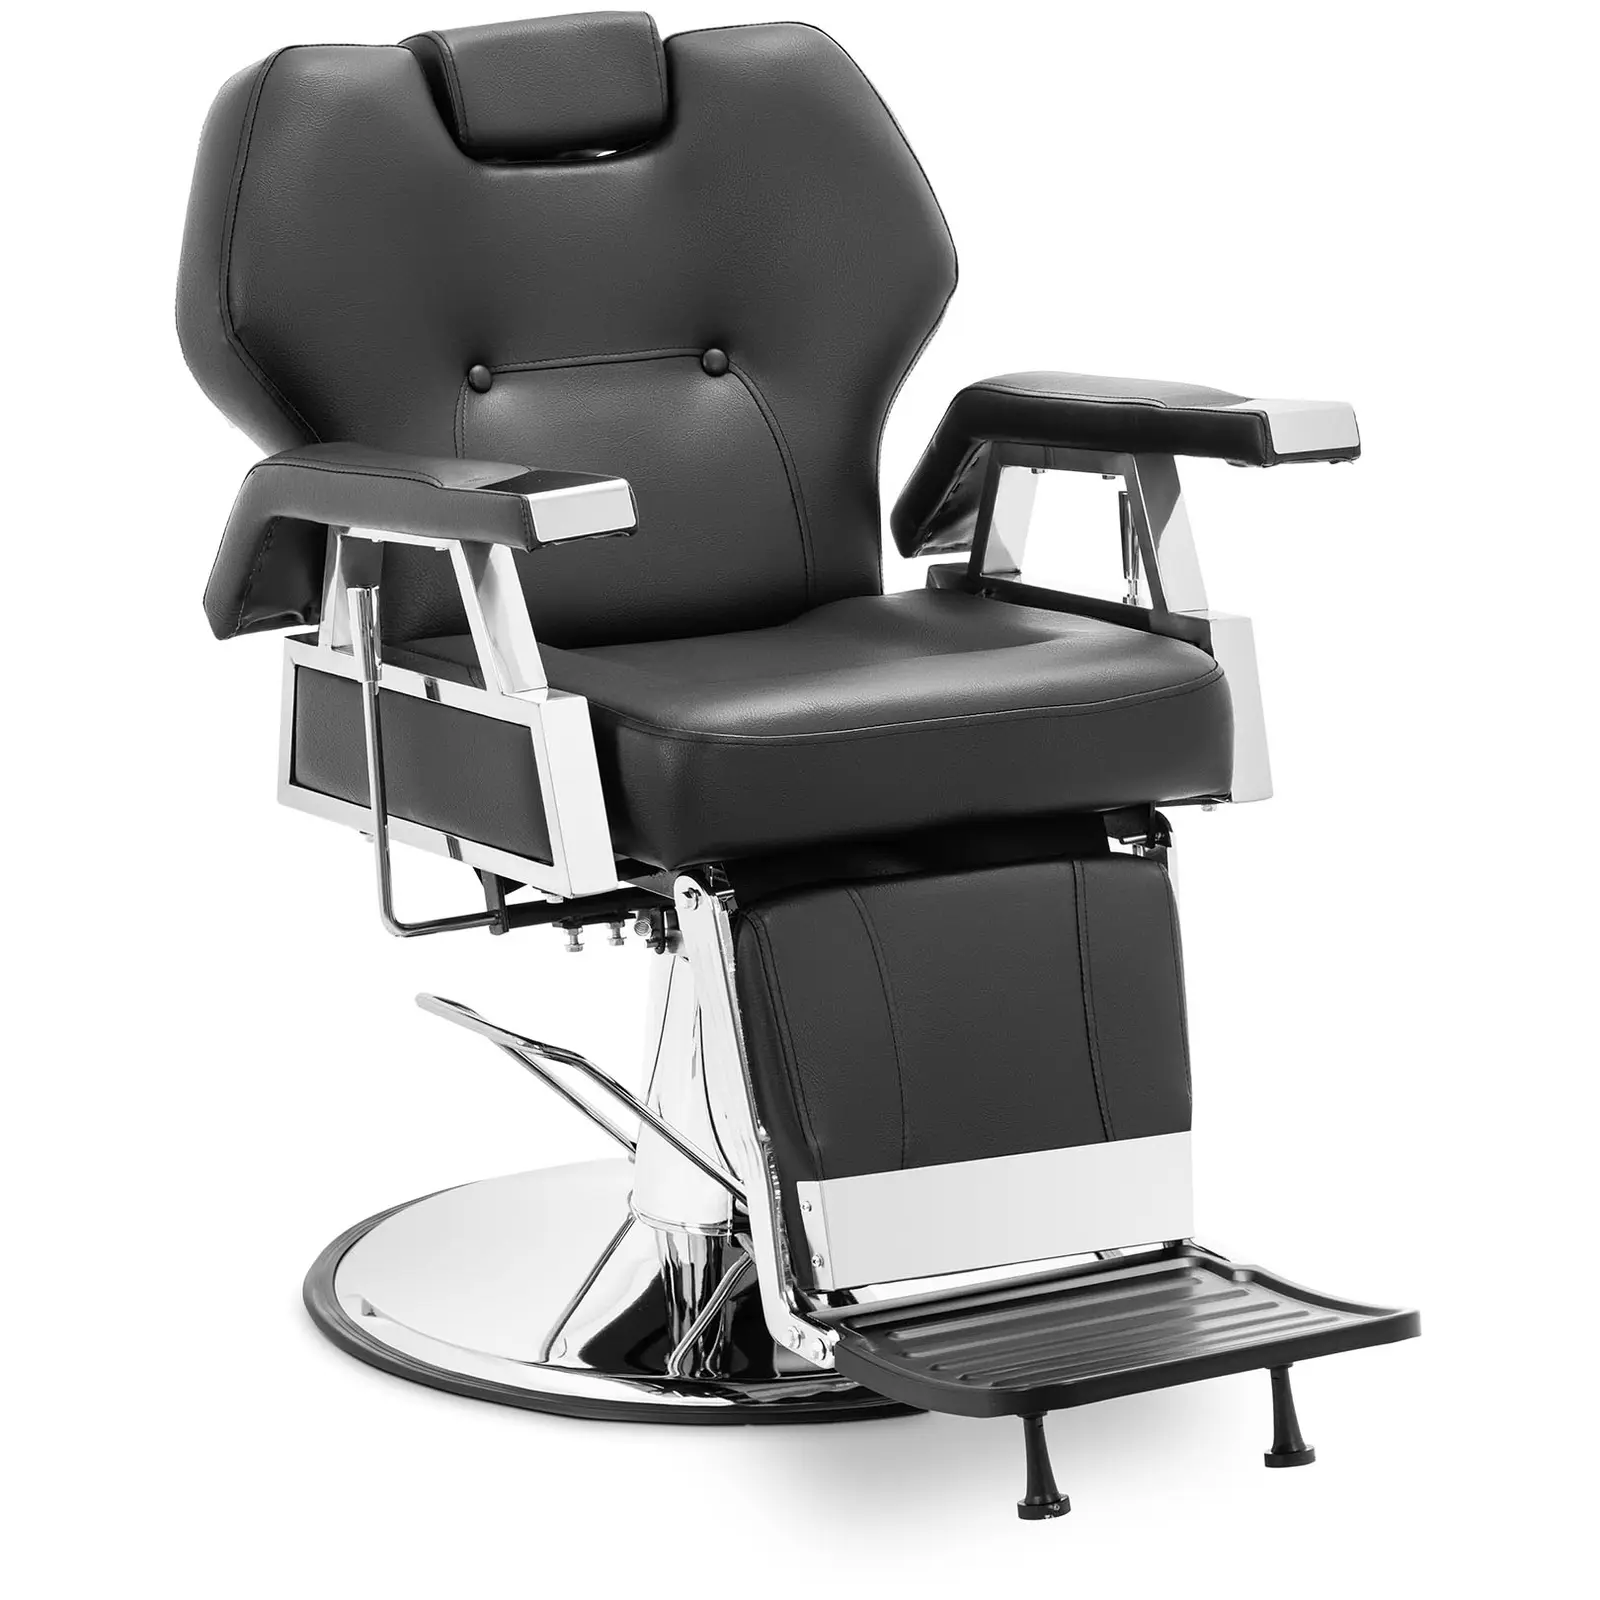 Салонен стол с поставка за крака - 59 - 69 см - 150 кг - черен